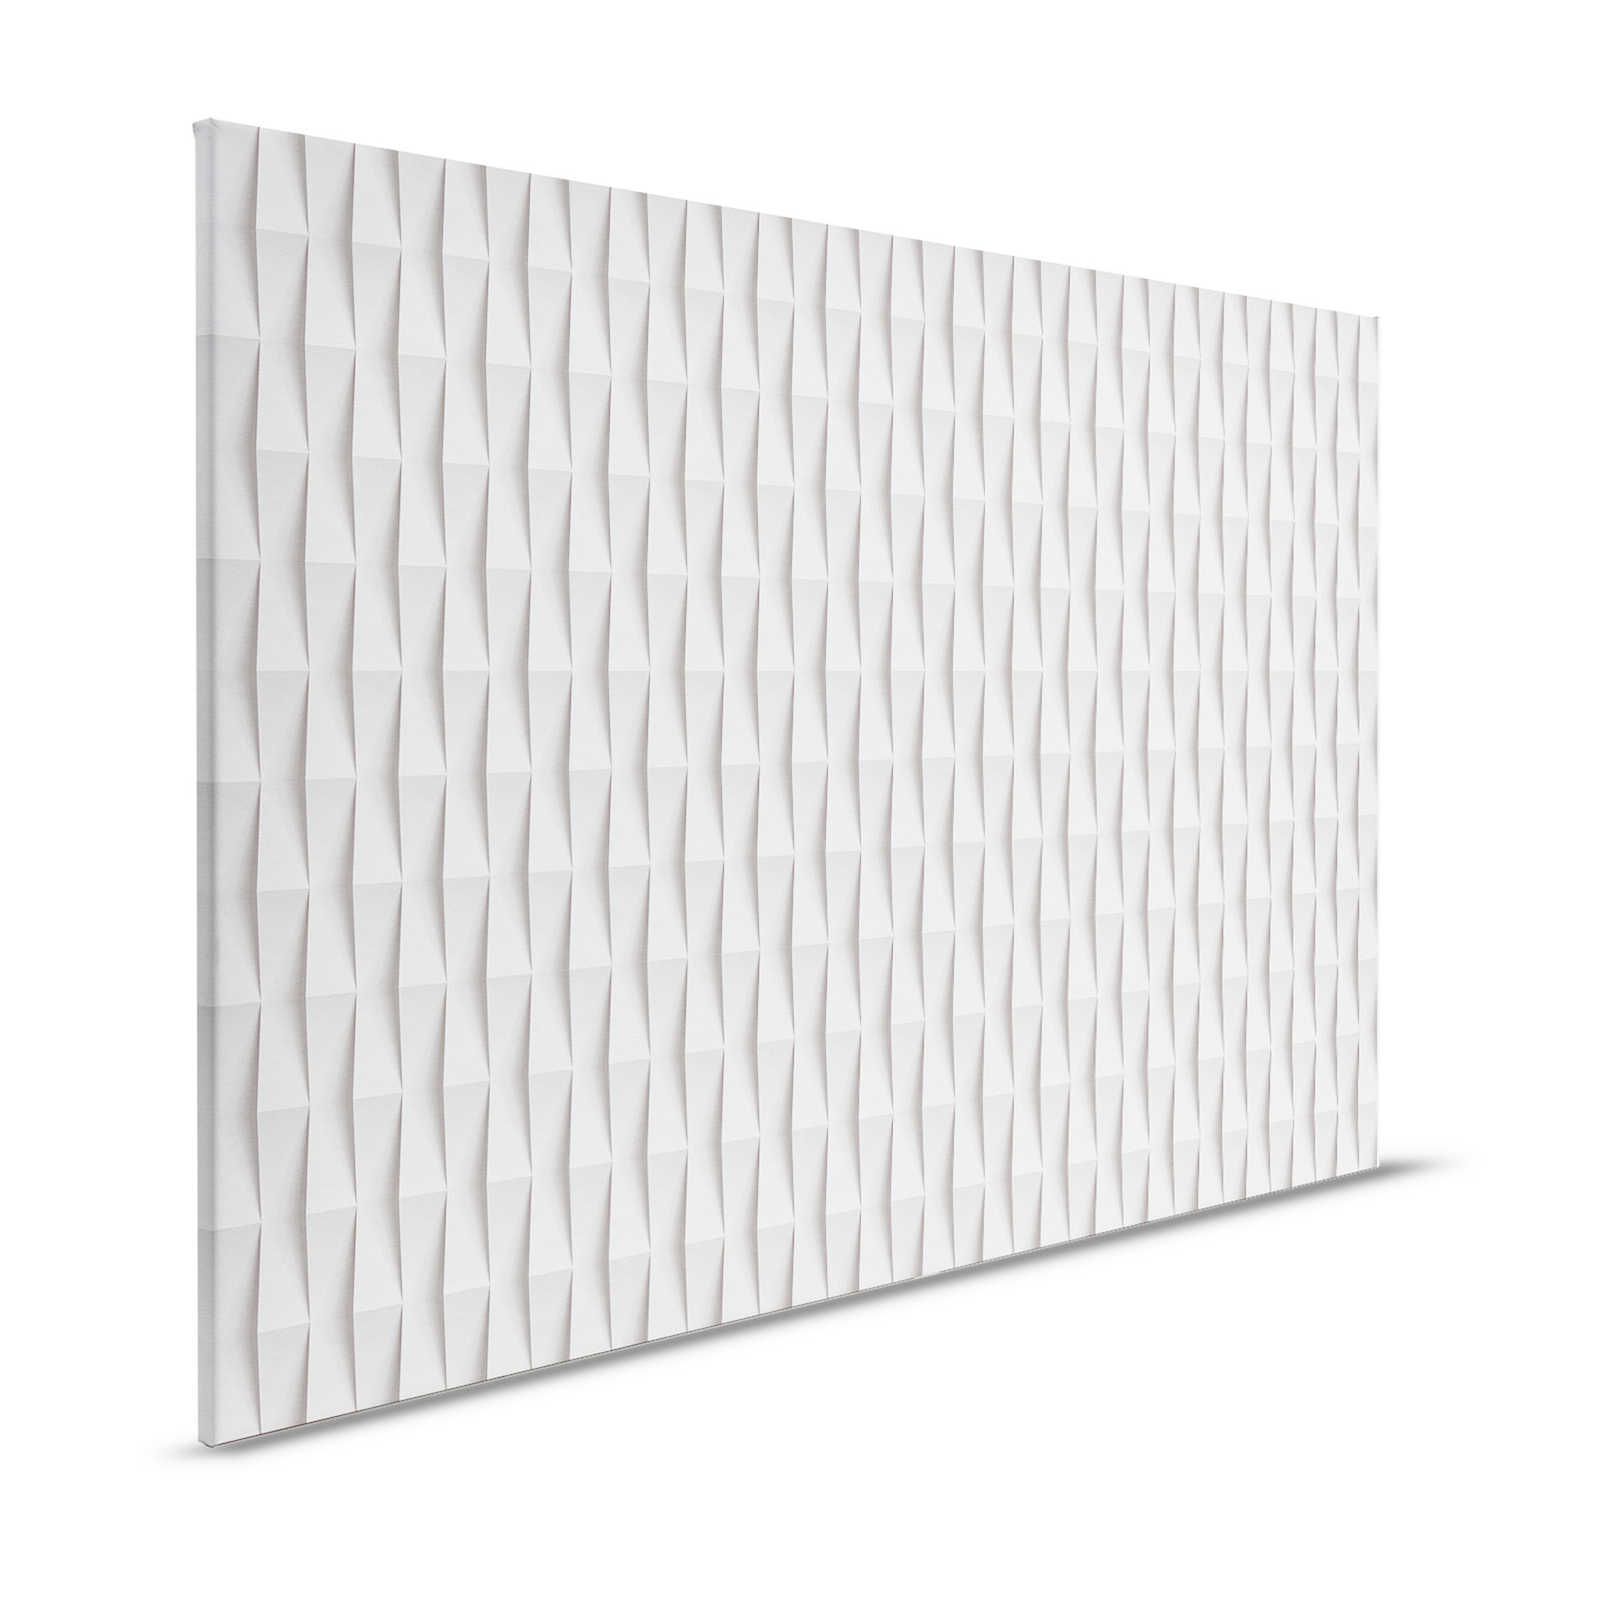 Casa di carta 2 - Pittura su tela 3D Design pieghevole su carta con ombre - 1,20 m x 0,80 m
